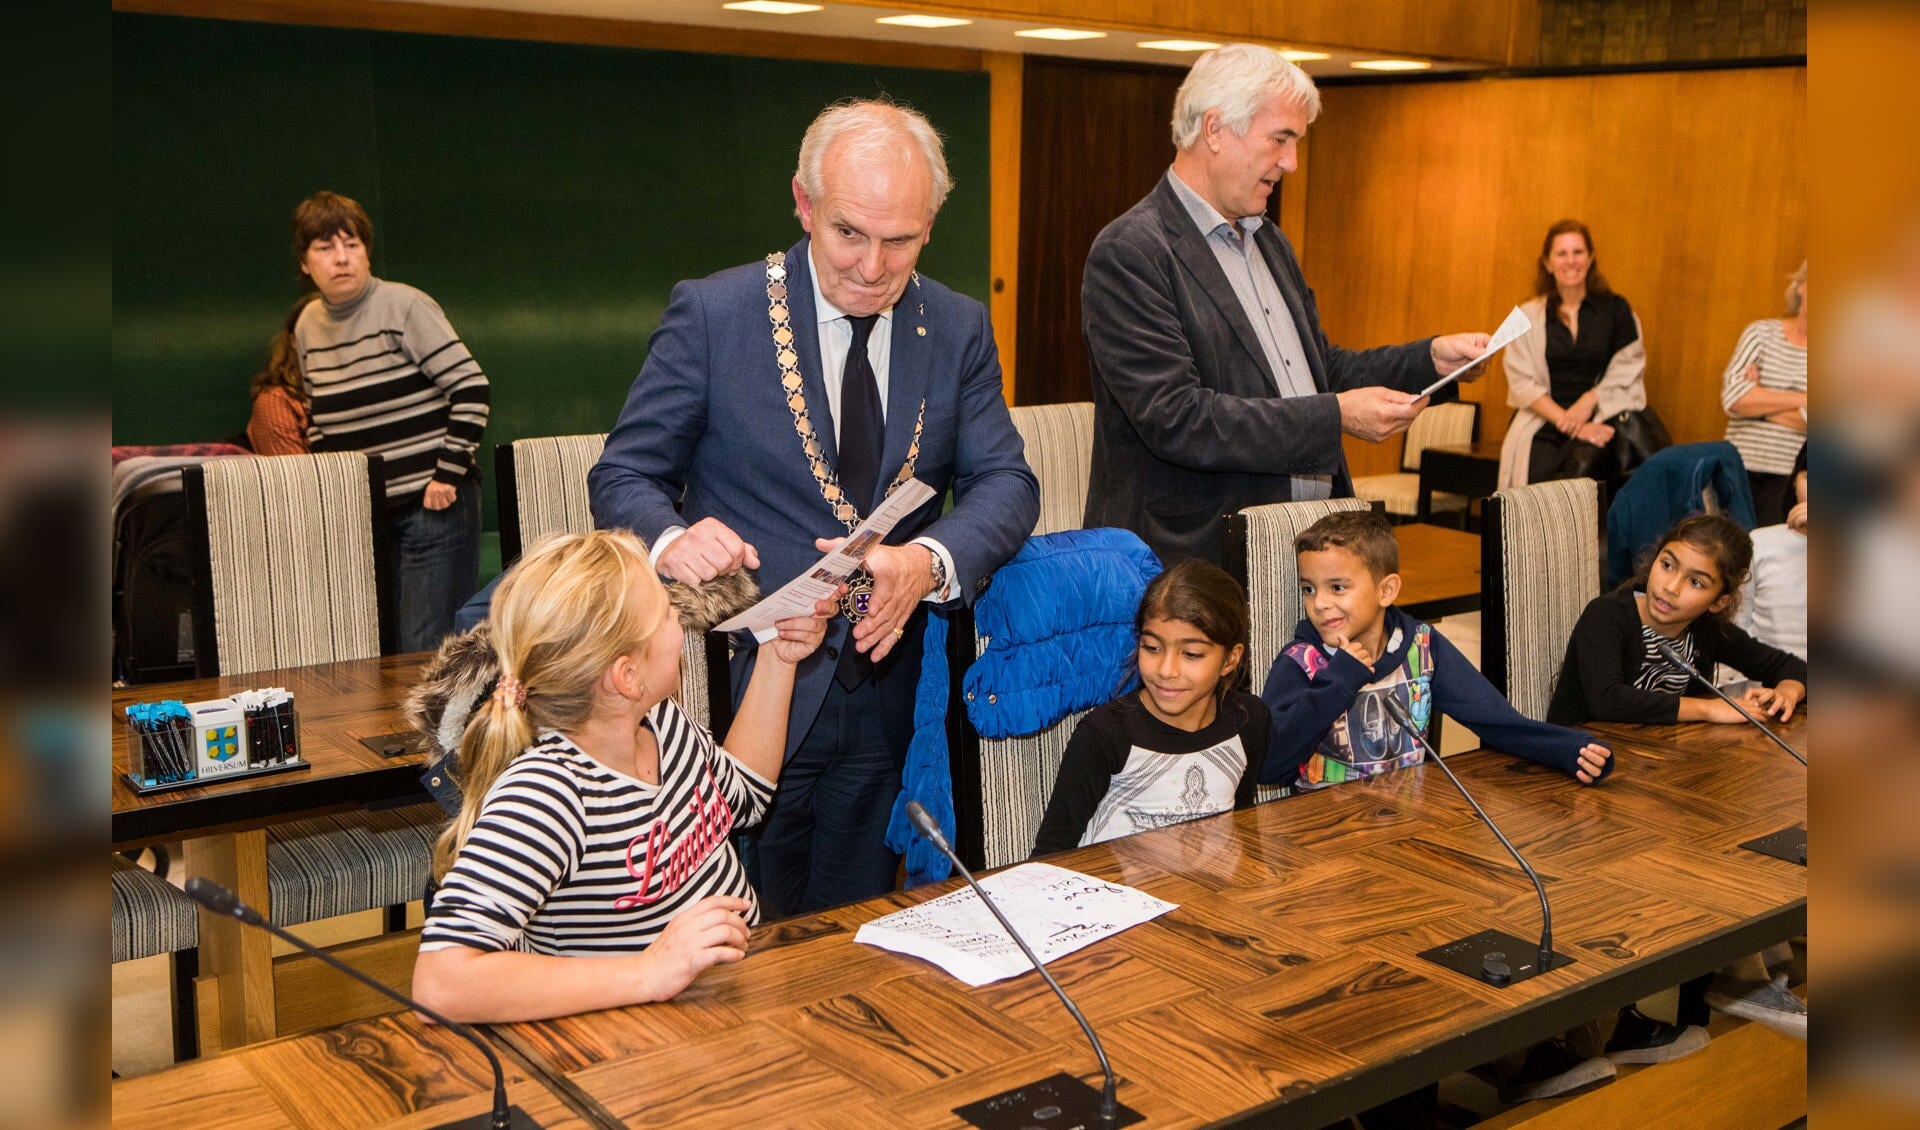 Burgemeester Broertjes en wethouder Van der Want namen de brandbrief in ontvangst van de kinderen die in maart het pand uit moesten vluchten.